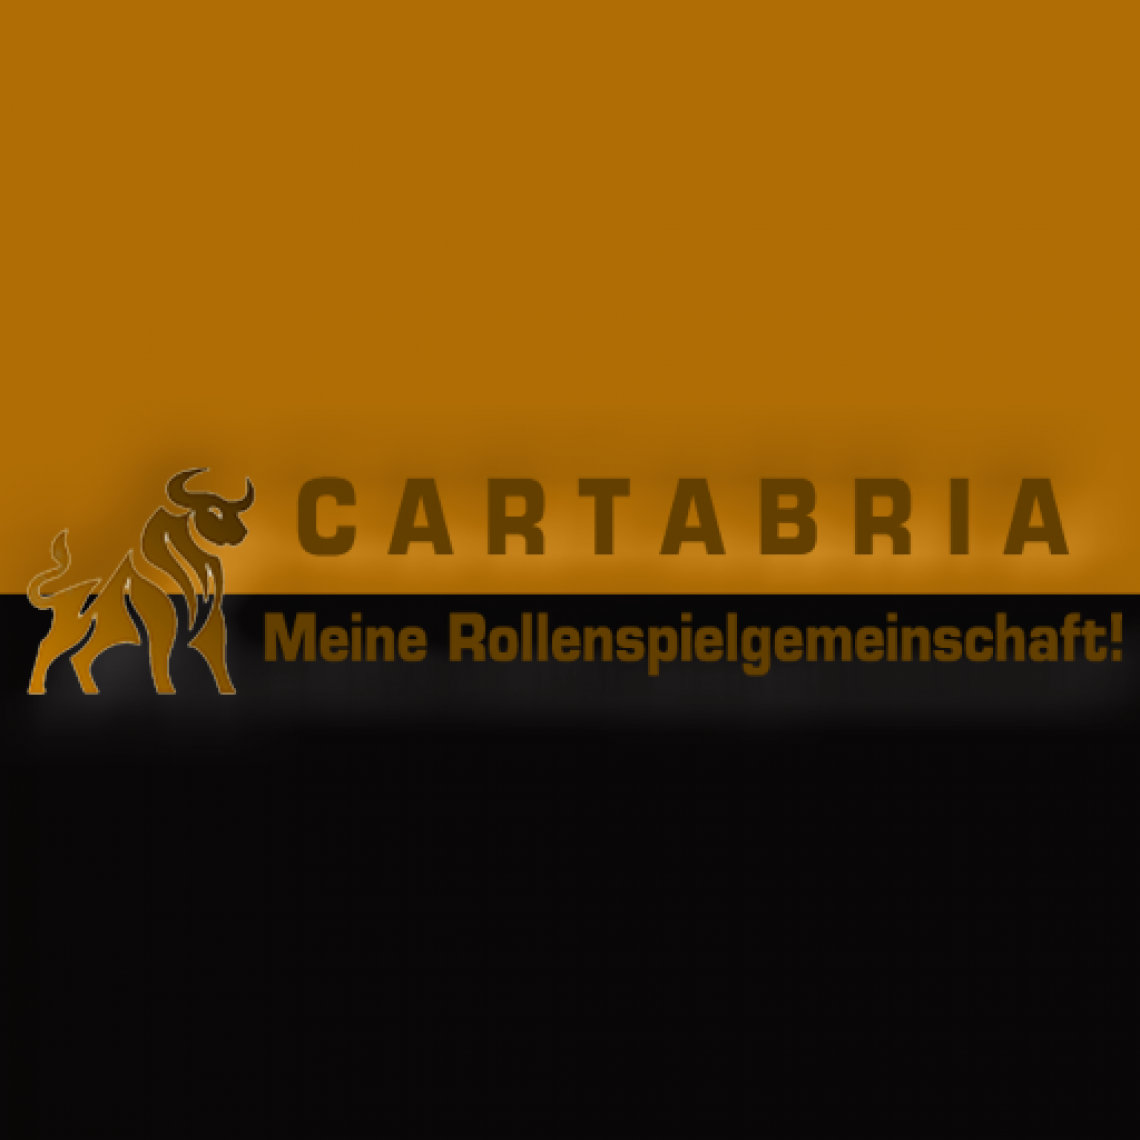 Das Kaiserreich Cartabria